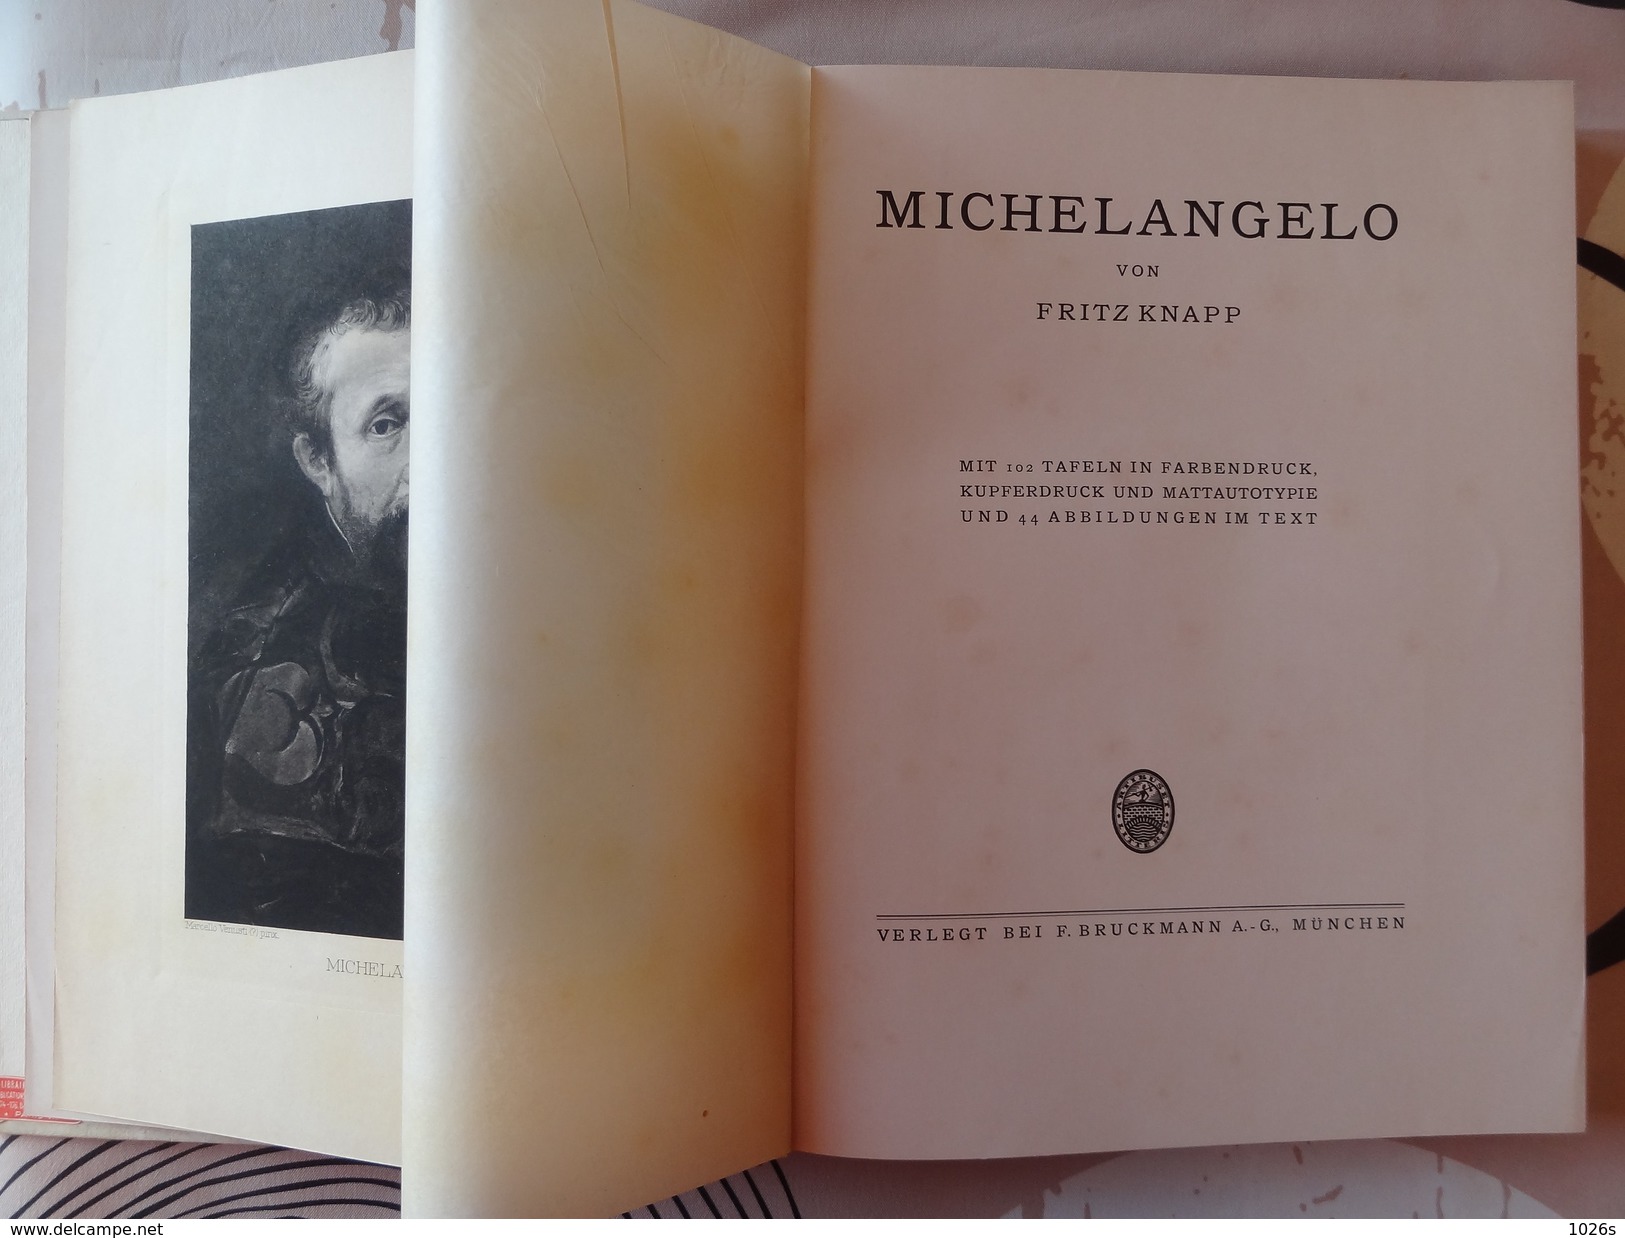 LIVRE D'ART SUR MICHELANGELO DE 1923 PAR FRITZ KNAPP PAR LES EDITIONS F.BRUCKMANN - MUNCHEN - Museums & Exhibitions